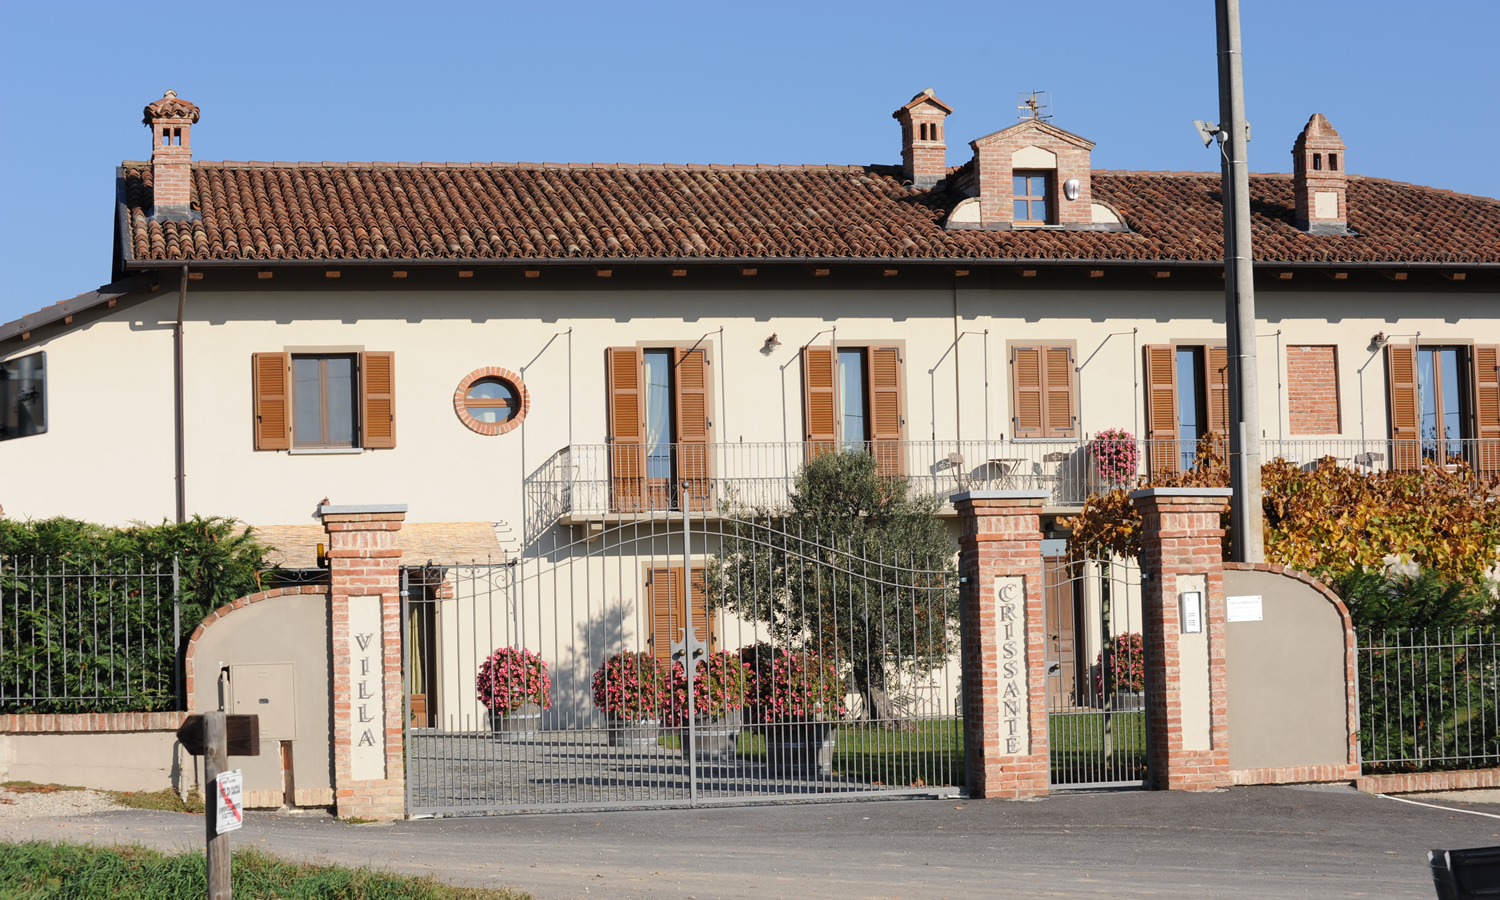 Appartamenti Villa Crissante La Morra Langhe